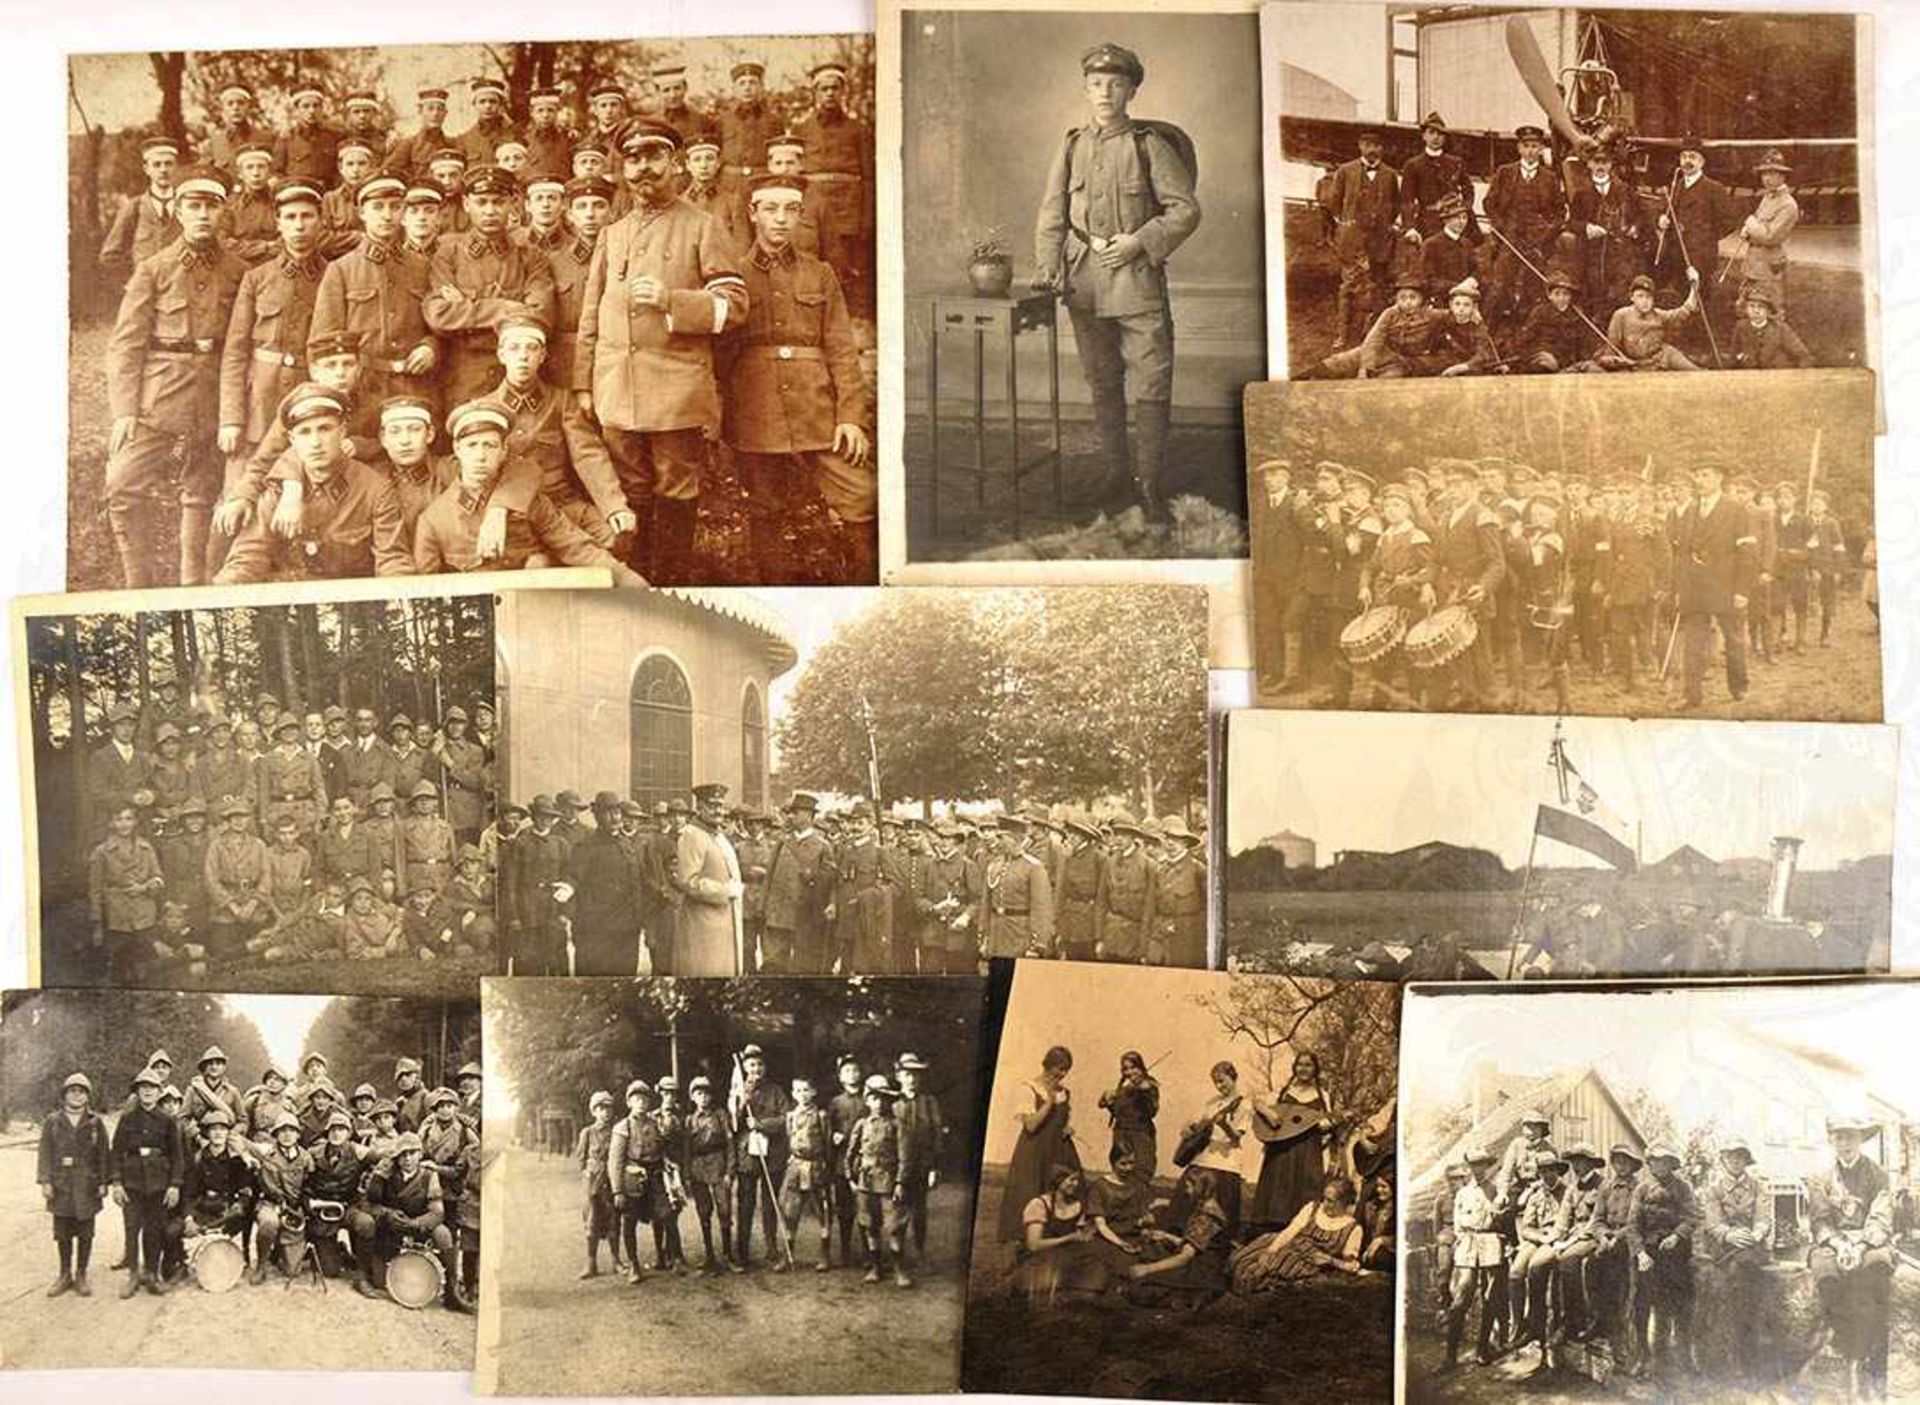 40 FOTOS JUGENDBÜNDE, Wandervogel-Bewegung etc., meist 1925-1930, einige vor 1918, 1x Repro, viel